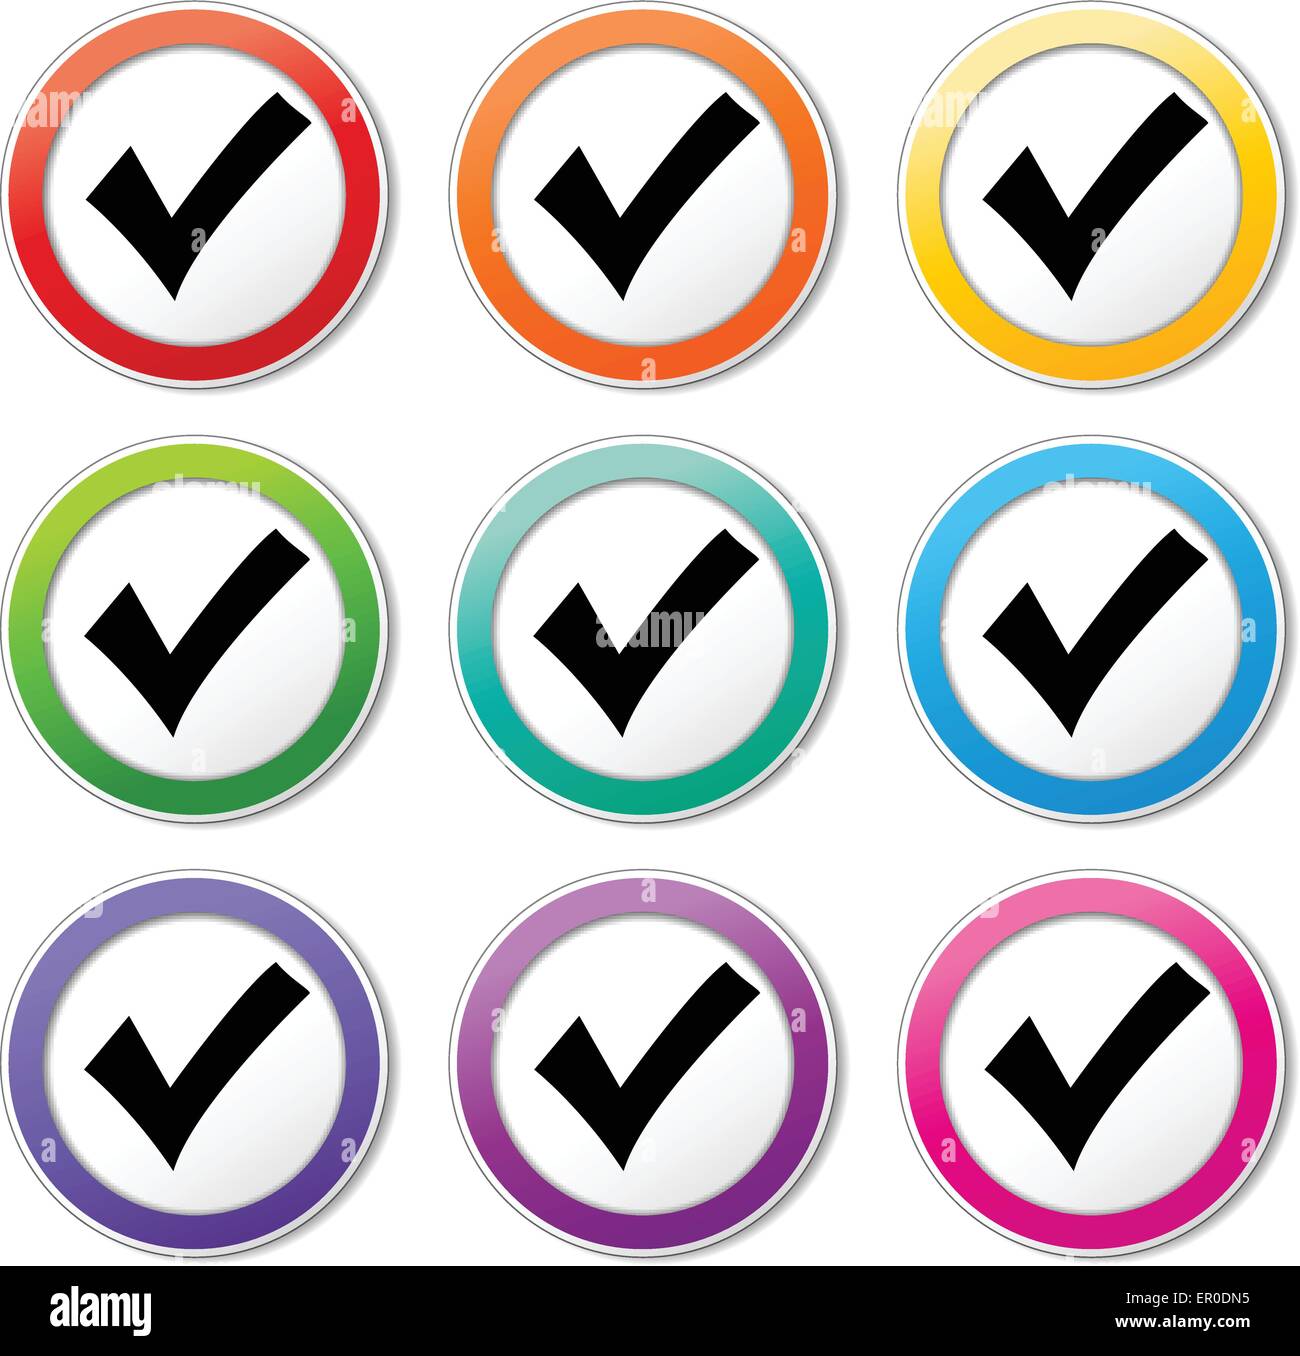 Ilustración de la marca de verificación iconos distintos colores ajustados Ilustración del Vector